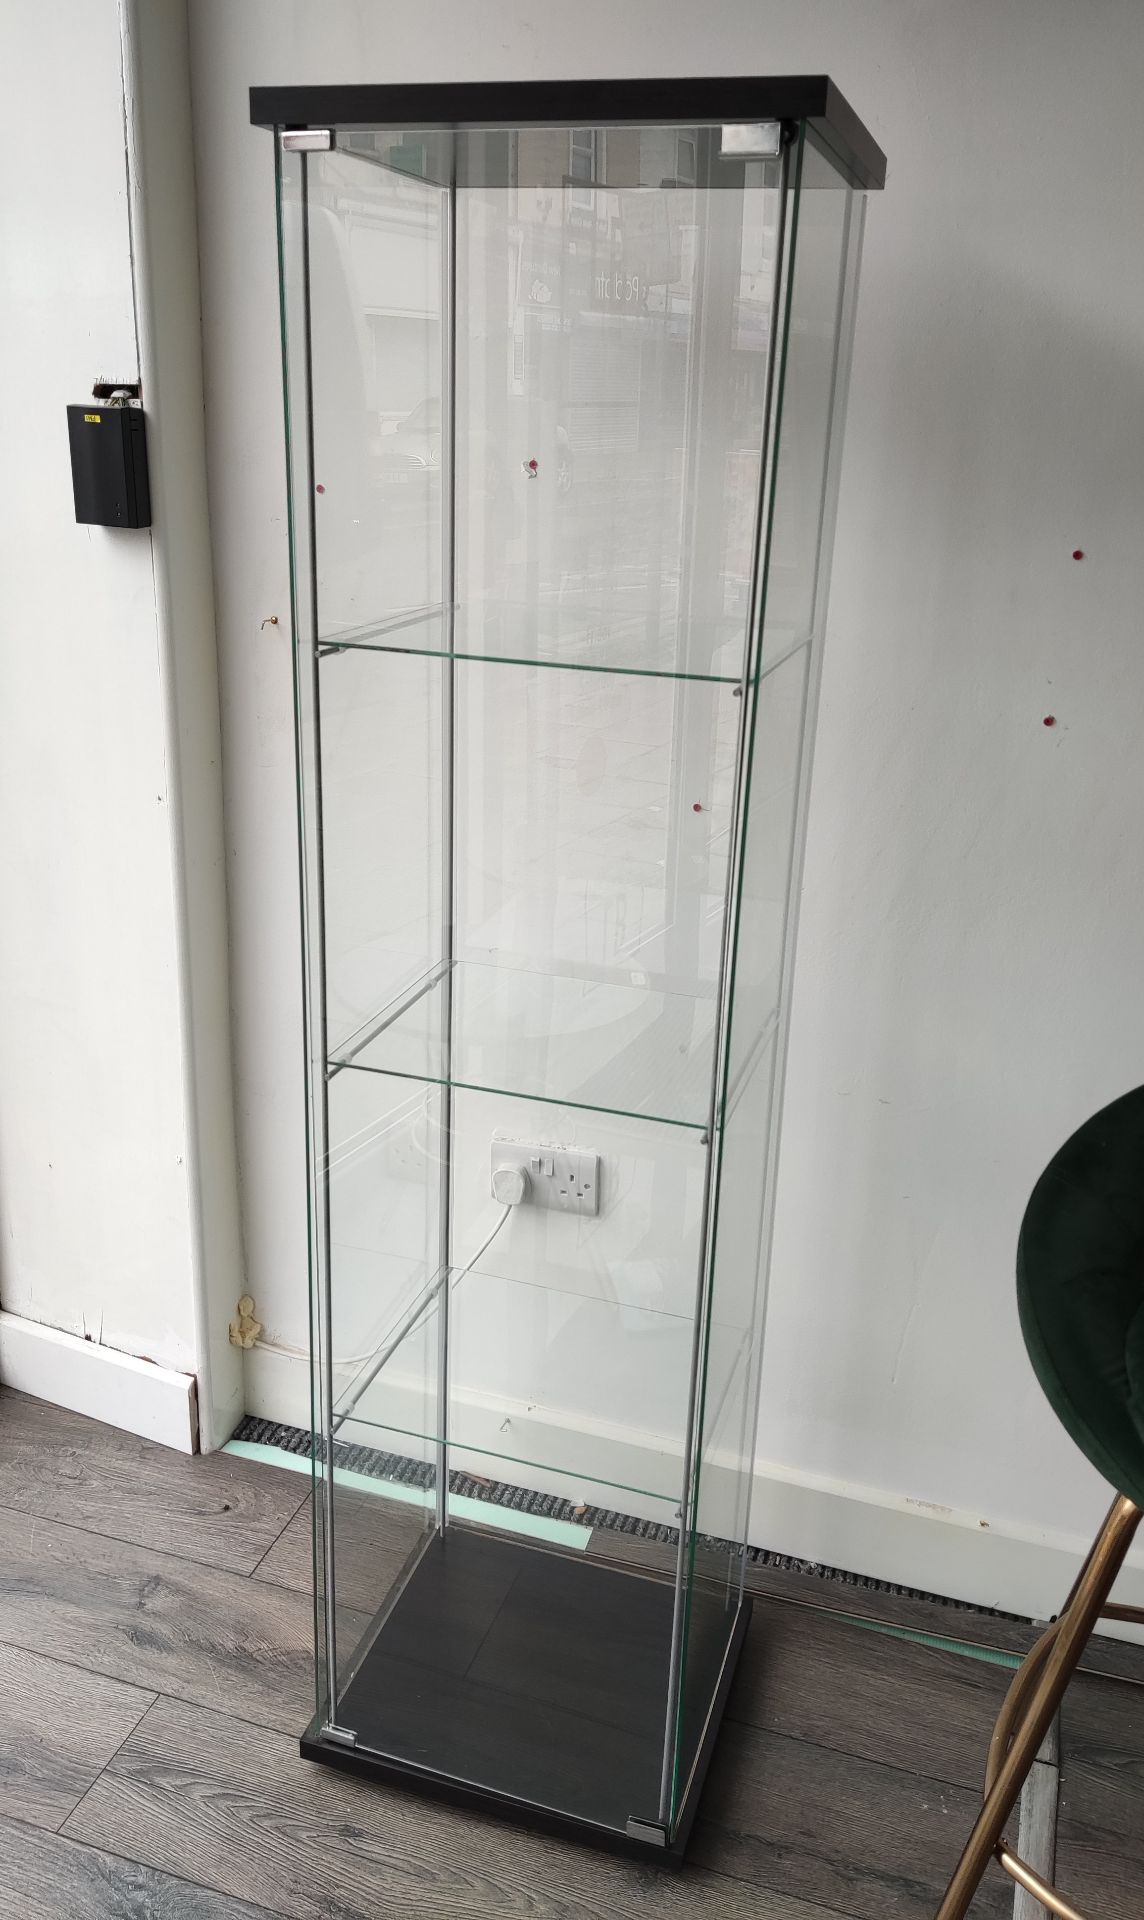 1 x Tall Glass Display Cabinet - LBC133 - CL763- Location: Sale M33Dimensions: 164 x 42.5 x